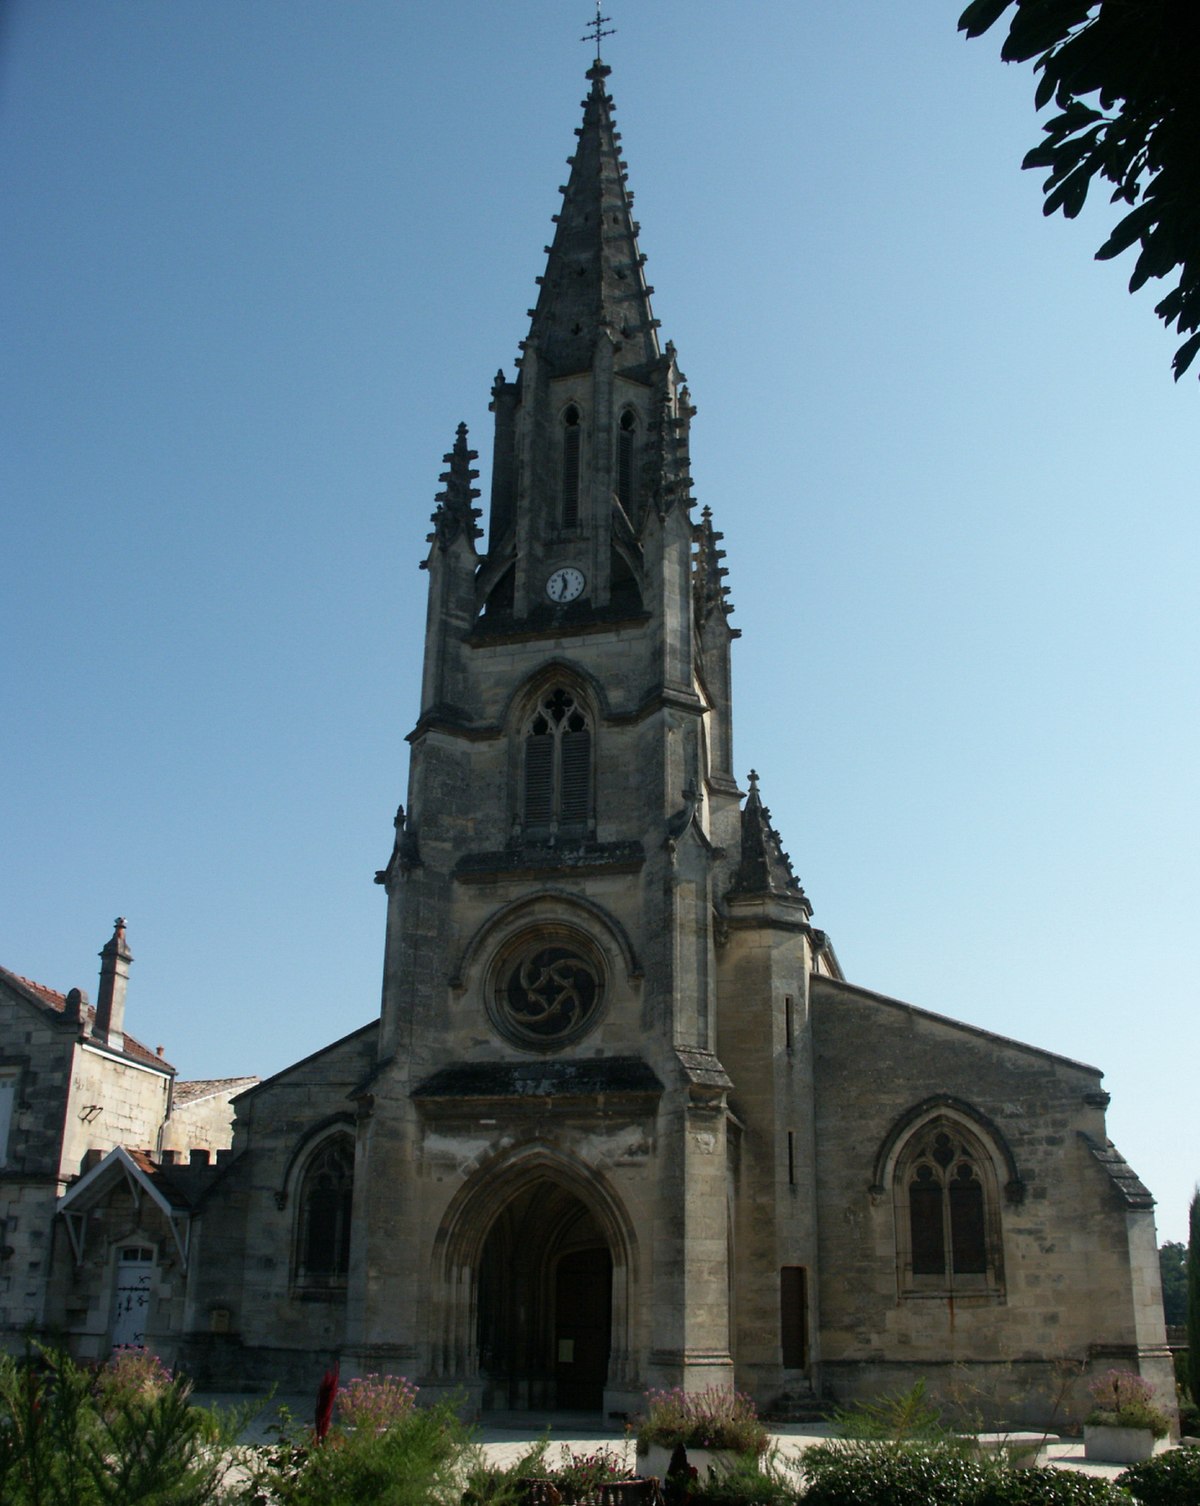 Définition : Chaire - Église catholique en France